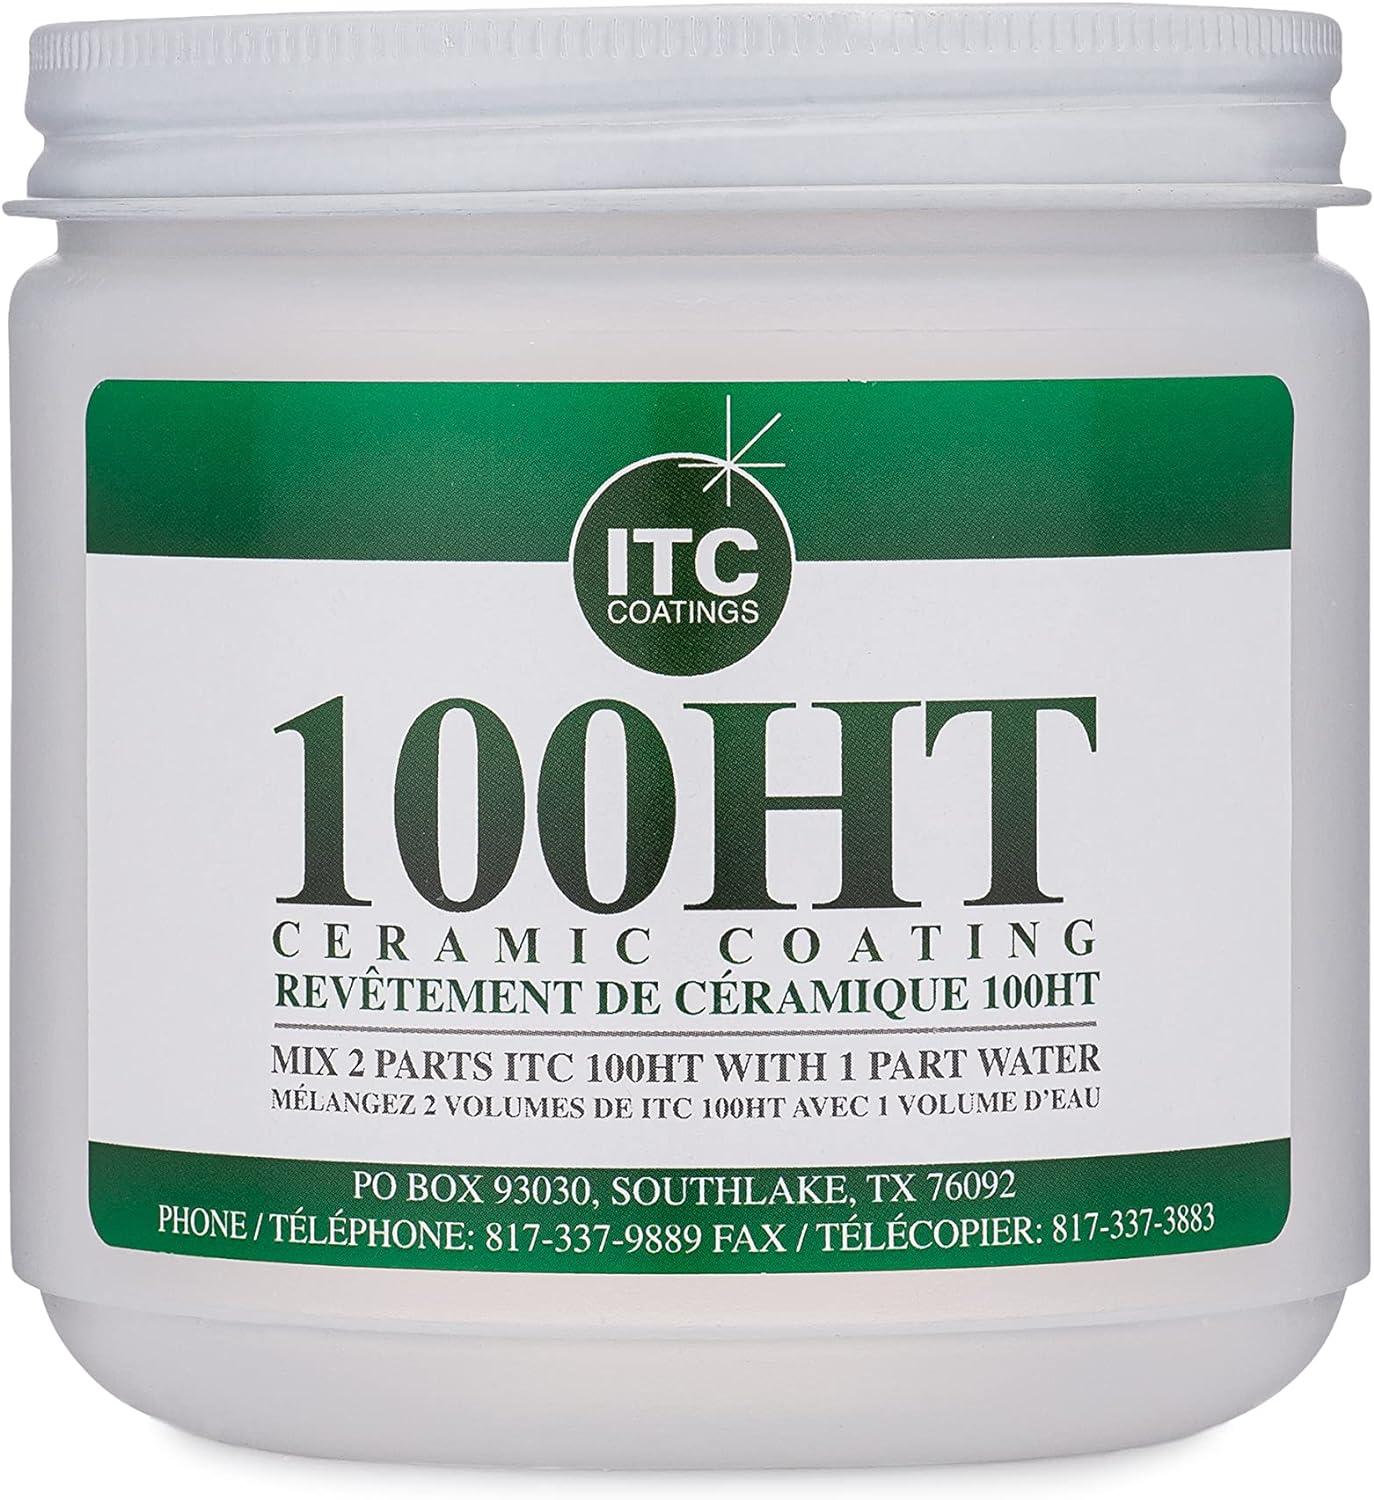 Mr Volcano ITC-100HT (1 Pint)  High Temperature Ceramic Coating